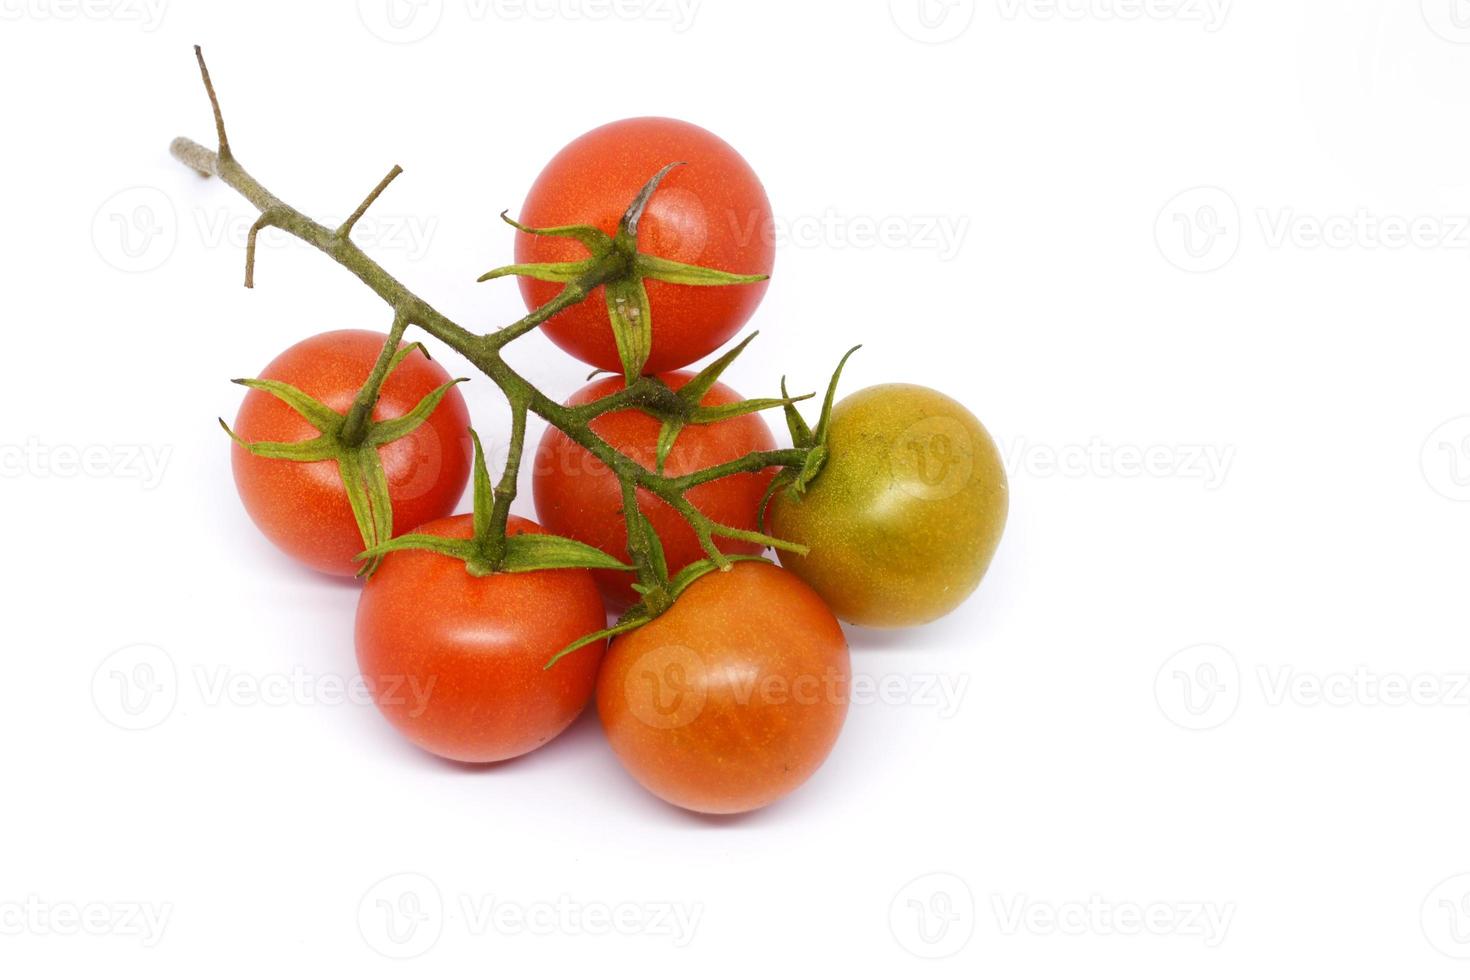 tomates vermelhos frescos isolados no fundo branco. Tomates ameixa. foto